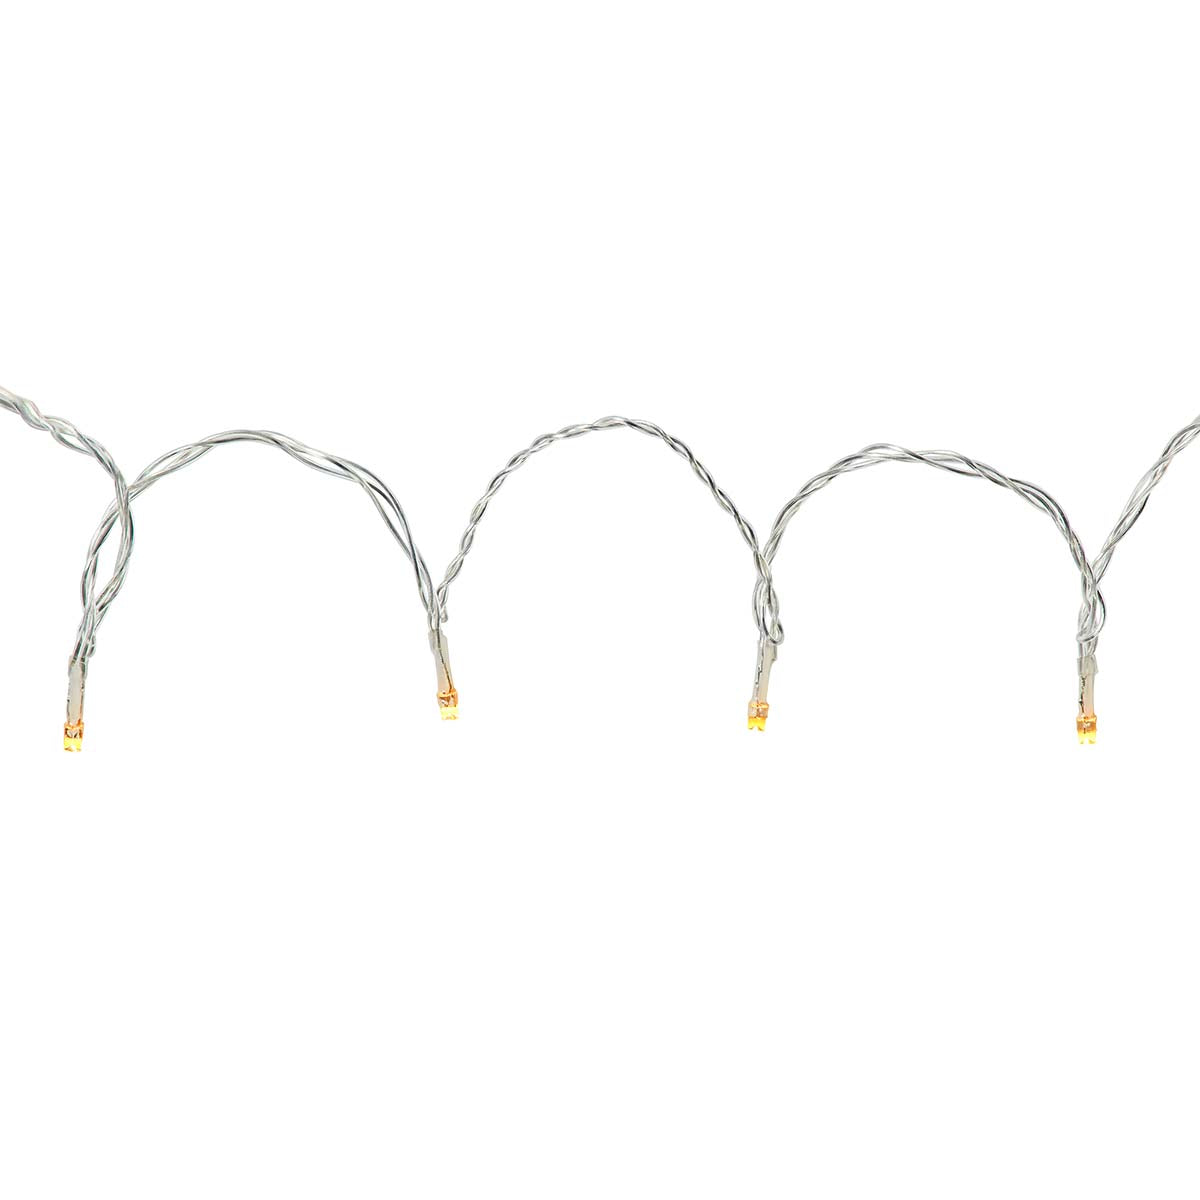 LED-Lichterkette Vorhang 200 LEDs 3m jetzt kaufen - Aktionskönig